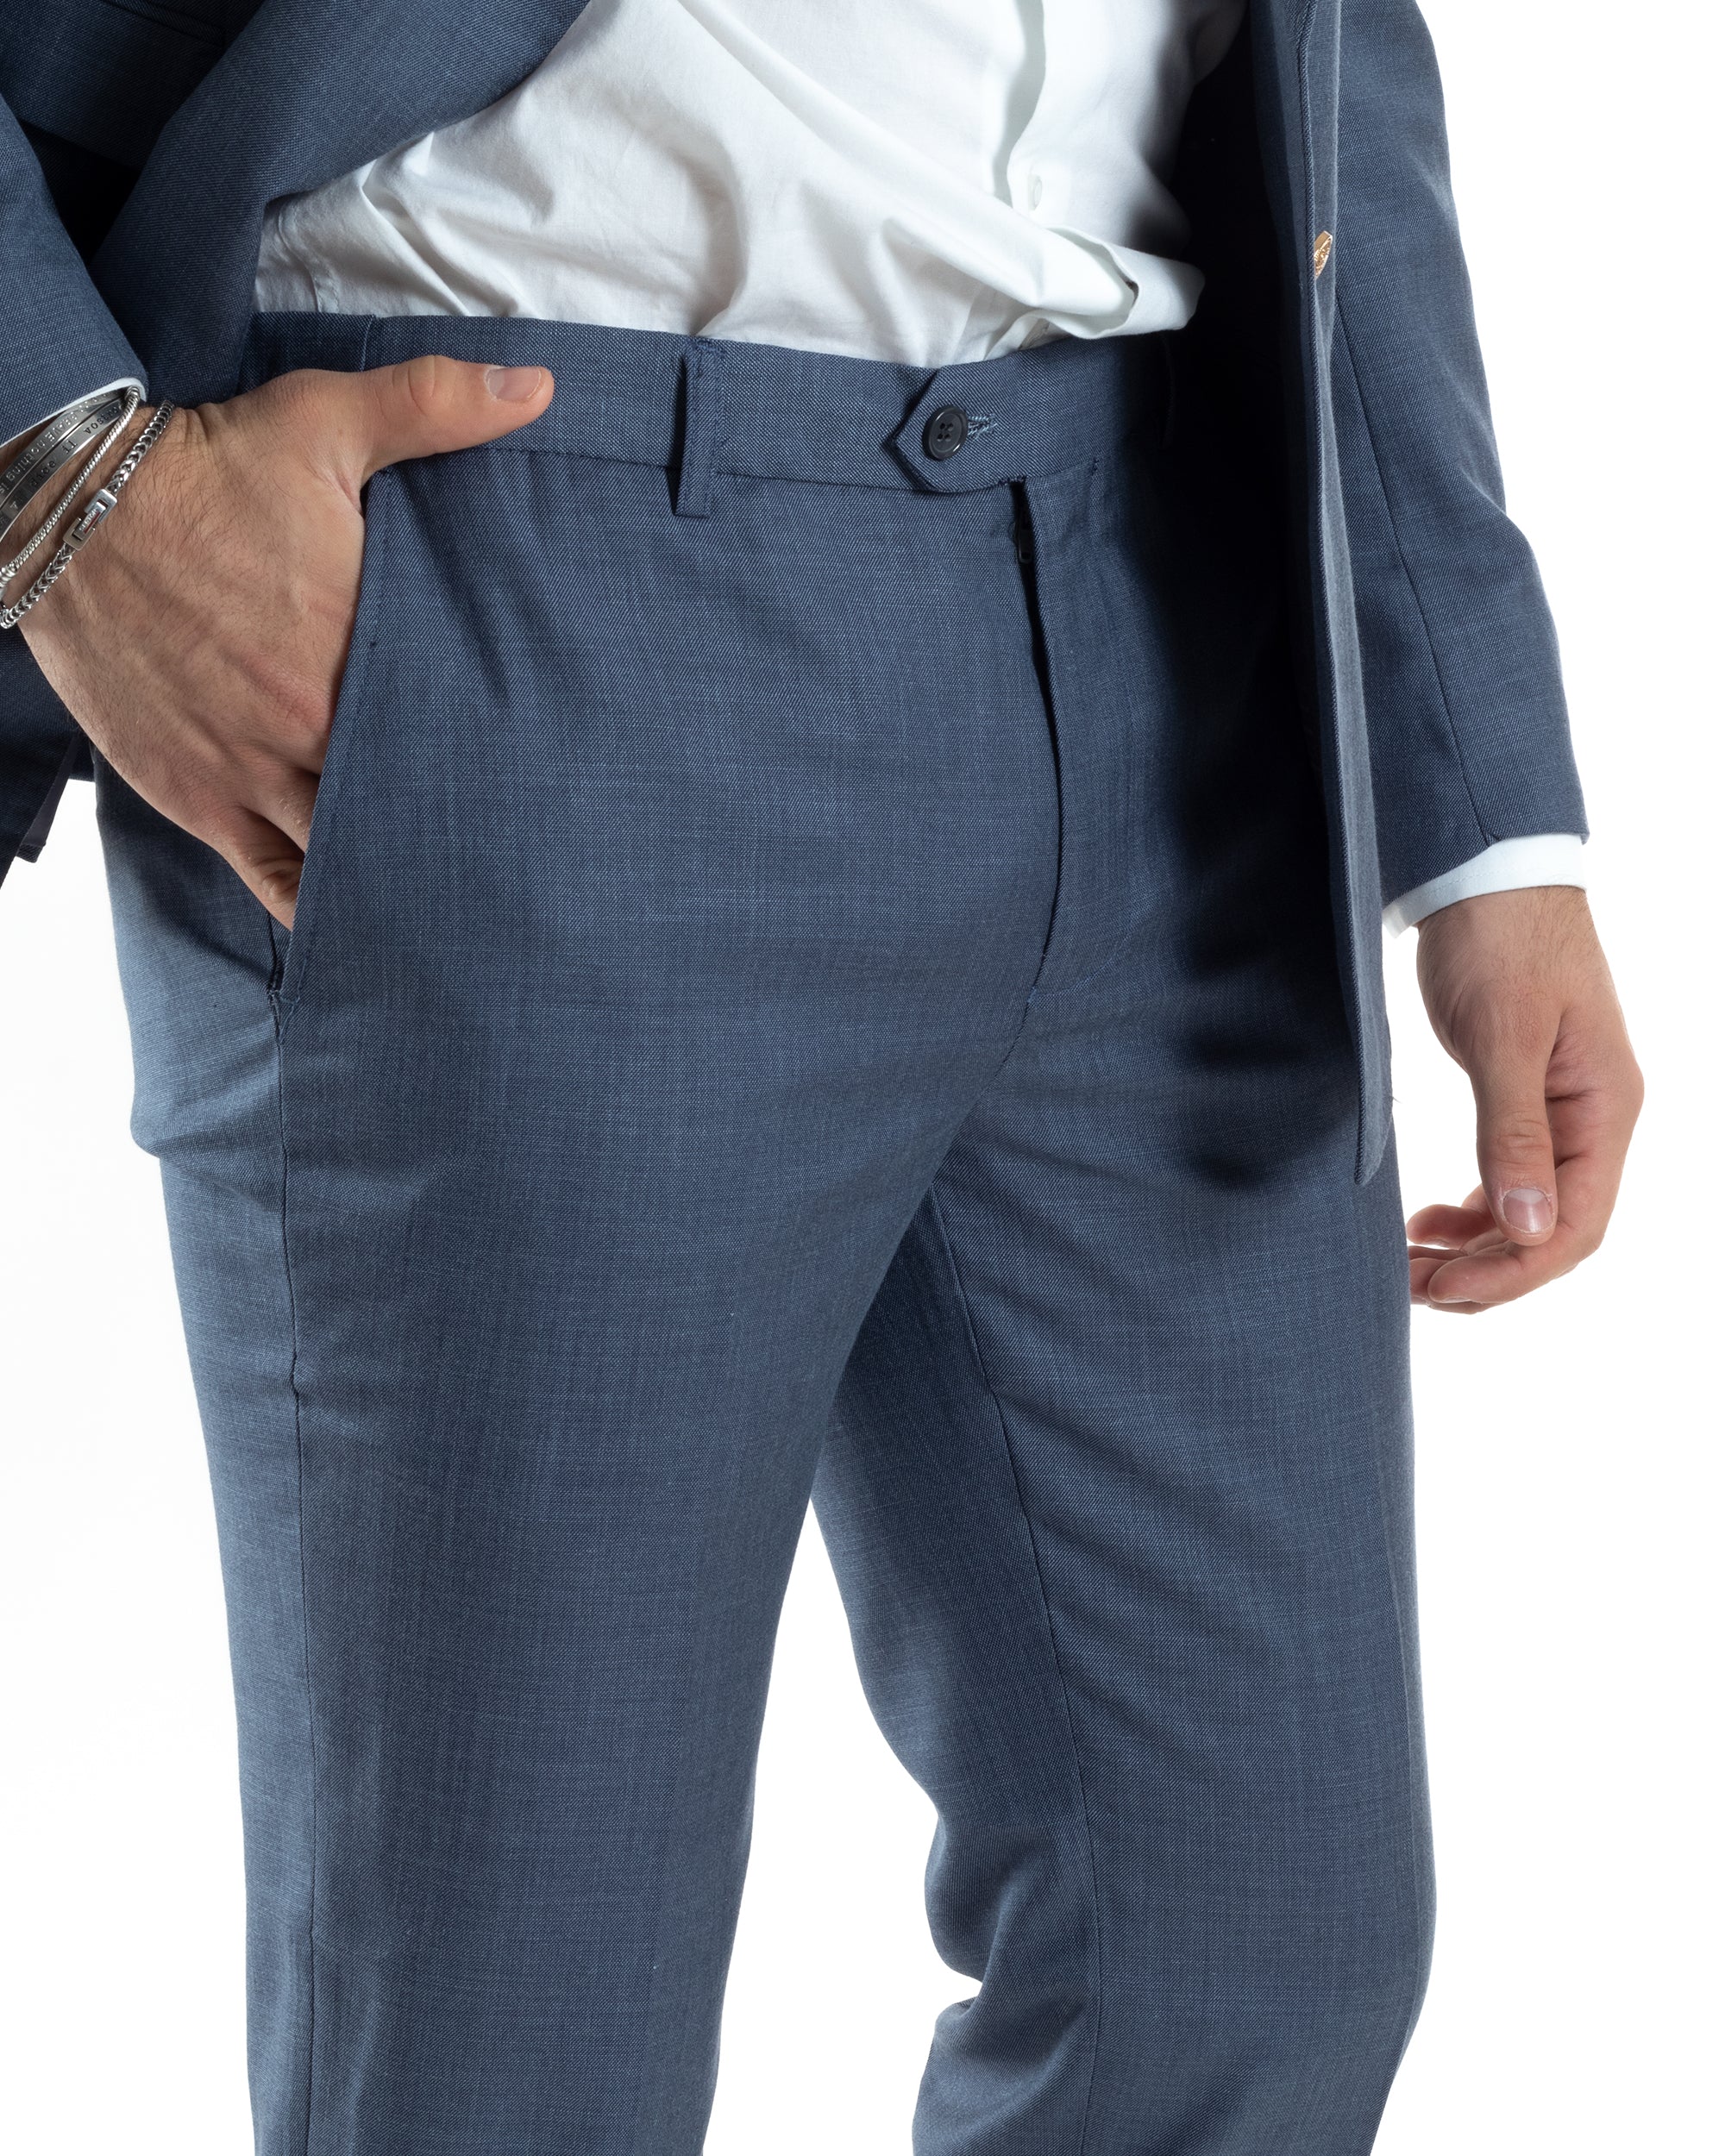 Abito Uomo Doppiopetto Vestito Completo Giacca Pantaloni Bottoni Metallo Blu Melangiato Elegante Casual GIOSAL-AE1045A